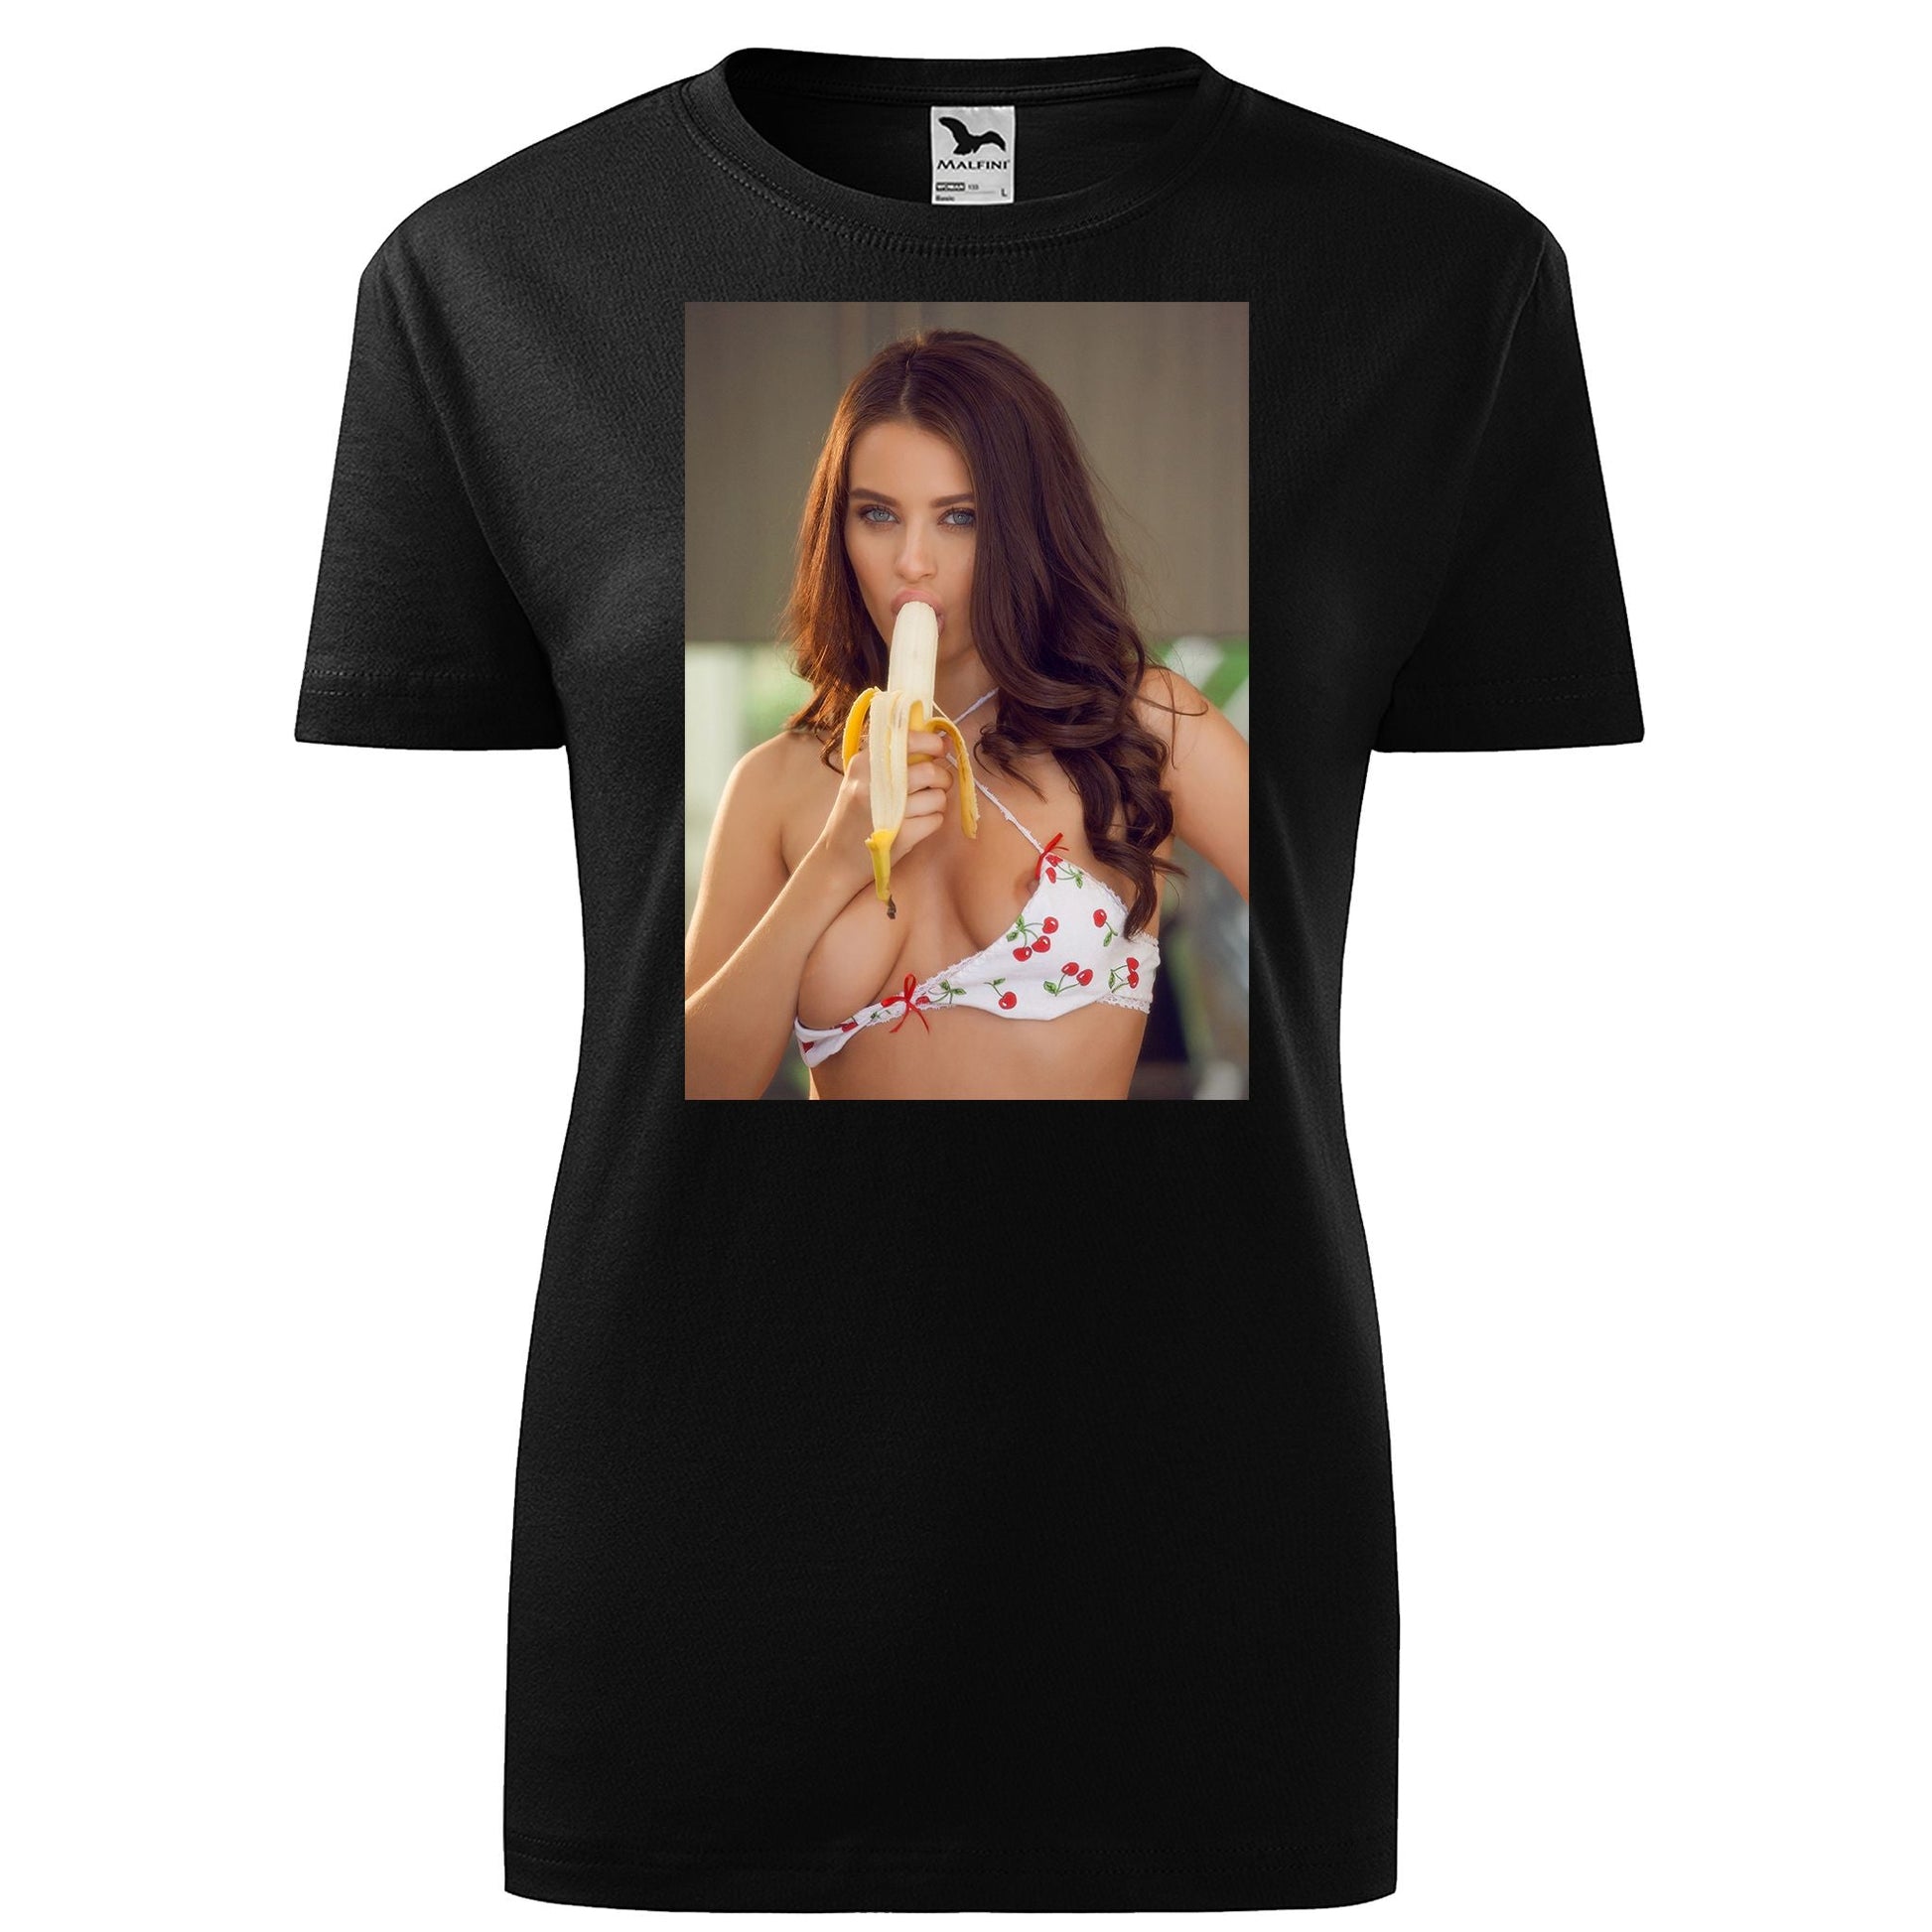 Lana rhoades t-shirt - rvdesignprint